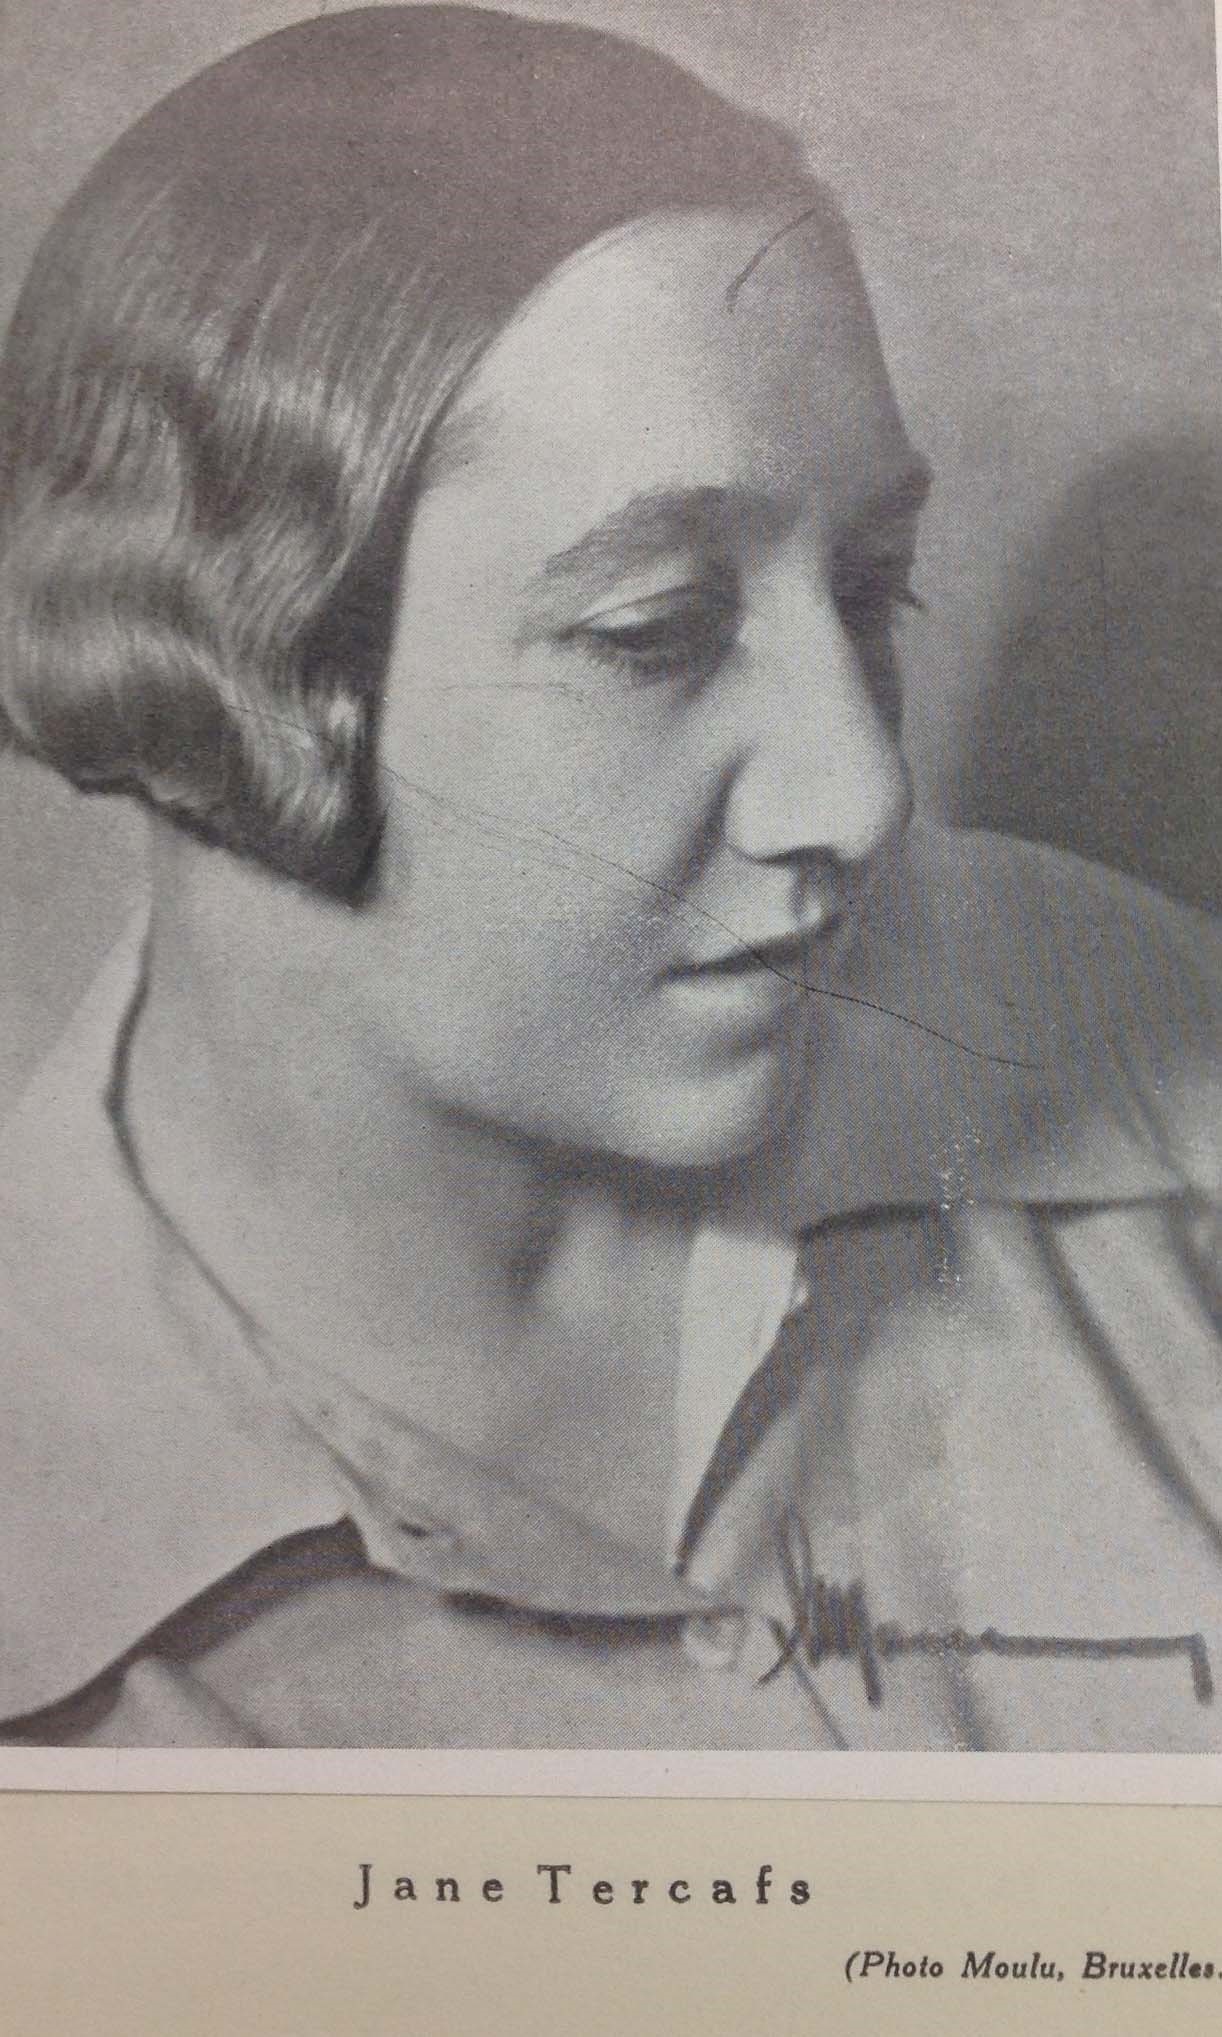 Photos extraites de : Garnier (Jean), Le sculpteur Jane Tercafs, Bruxelles, Éditions de la Phalange, 1938.